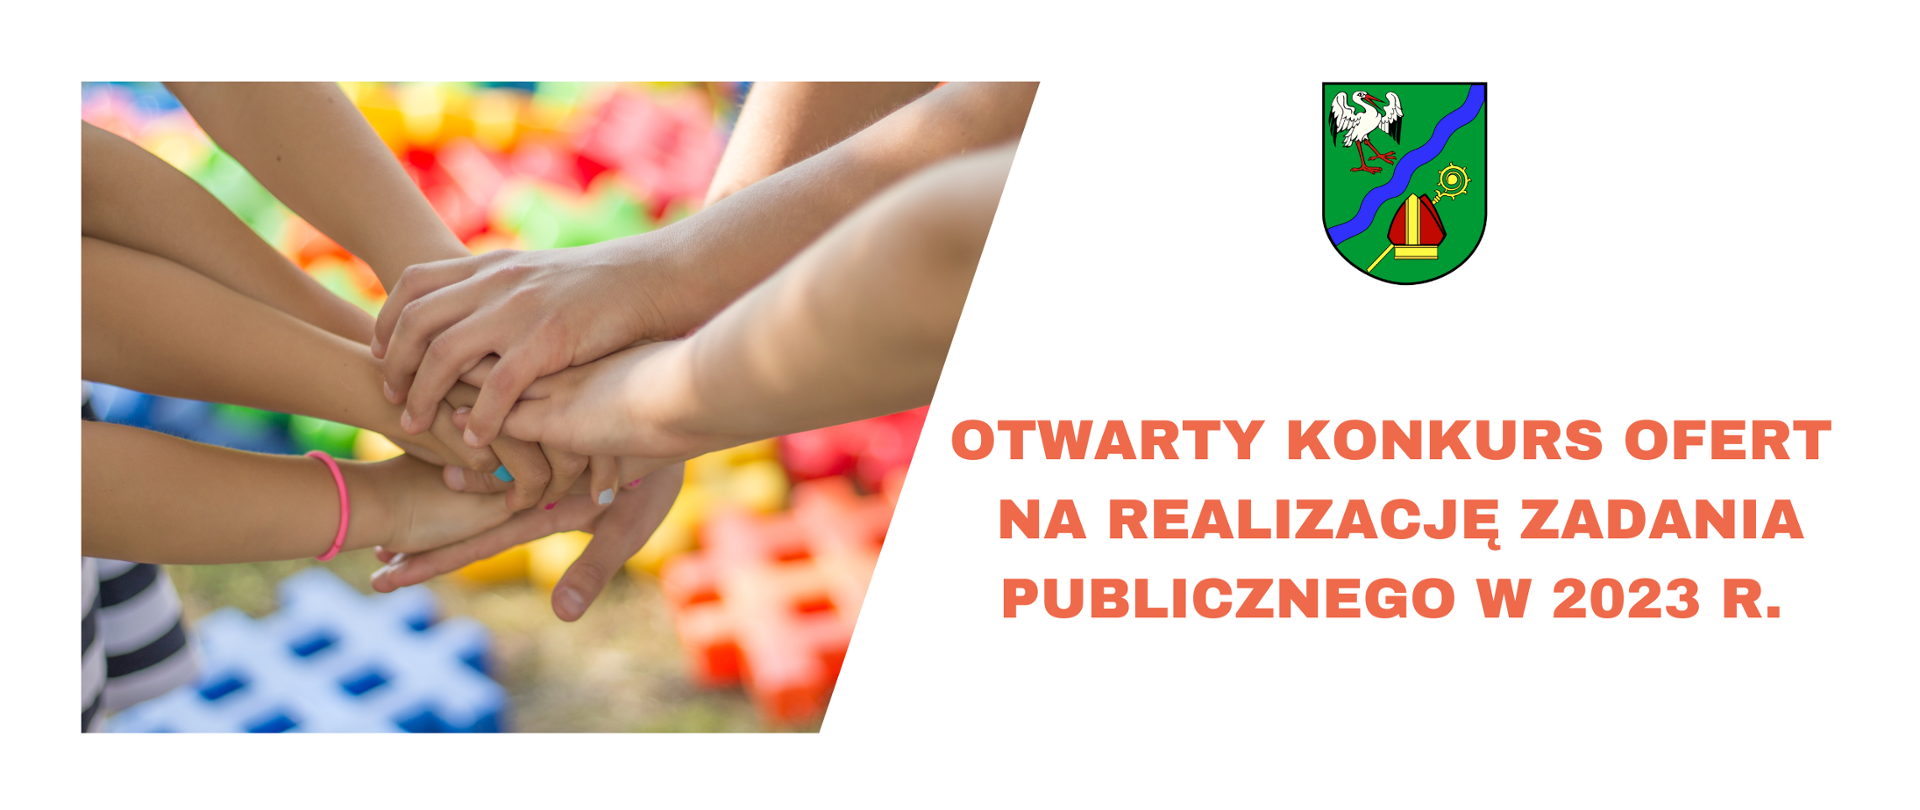 Zdjęcie dłoni ułożonych jedna na drugiej, obok herb gminy Brańszczyk, a poniżej hasło "Otwarty konkurs ofert na realizację zadania publicznego w 2023 r.".